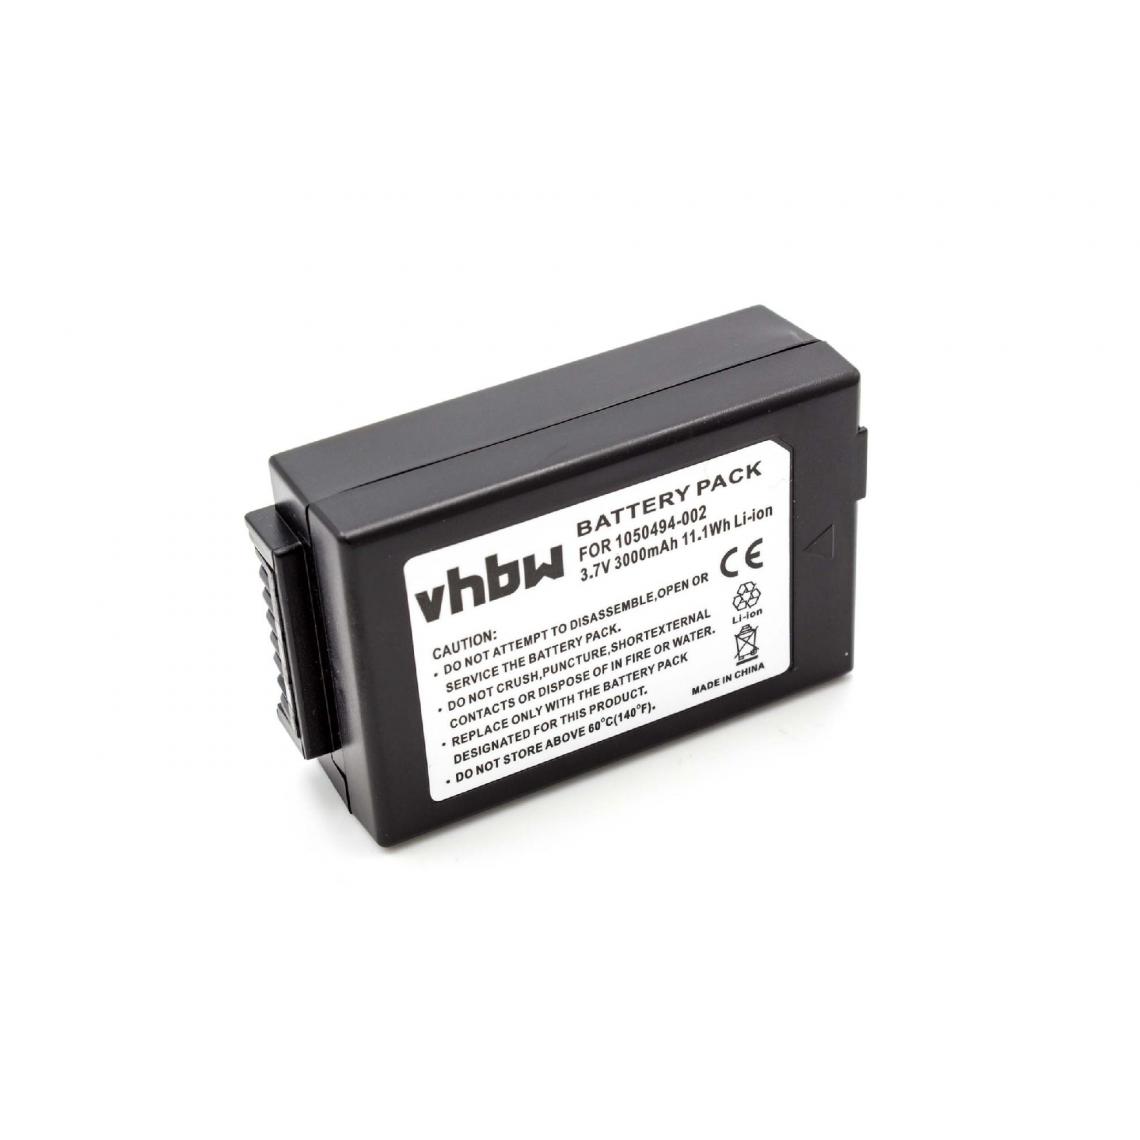 Vhbw - vhbw Batterie remplacement pour Psion 1050494, 1050494-002, WA3006, WA3020 pour ordinateur handheld (2000mAh, 3,7V, Li-ion) - Caméras Sportives